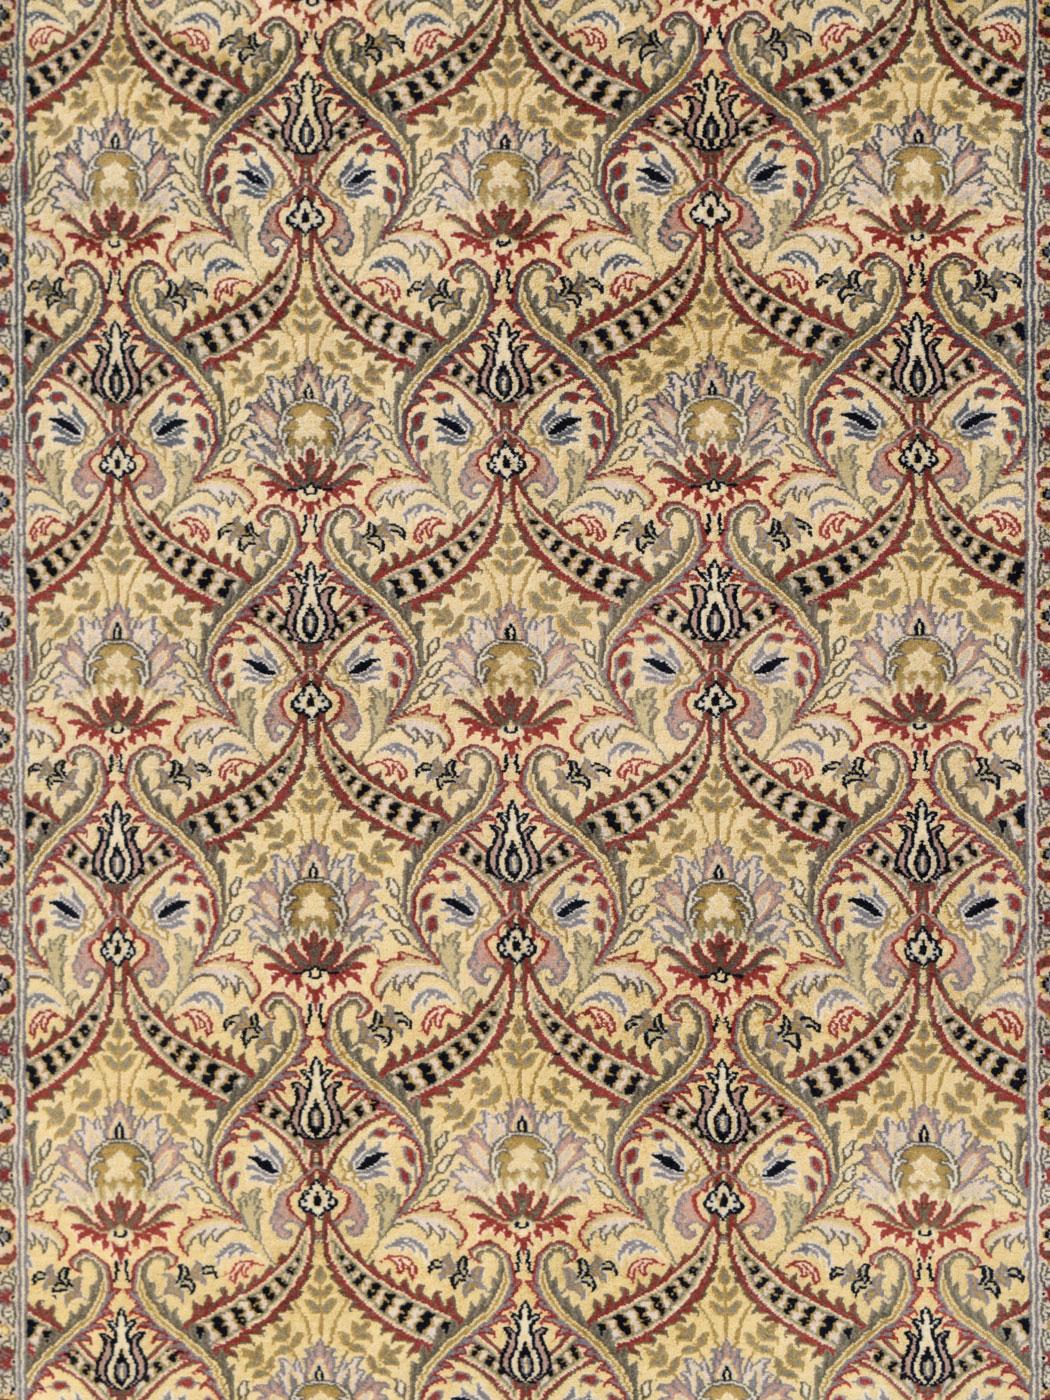 Avec un fond doré et un motif de guirlande verte, ce tapis inspiré de Semnan a été tissé au Pakistan et mesure 4' x 6'. Le motif Semnan est composé de motifs floraux, entourés de guirlandes de détails rouges et verts. Poétique et condensé, le design